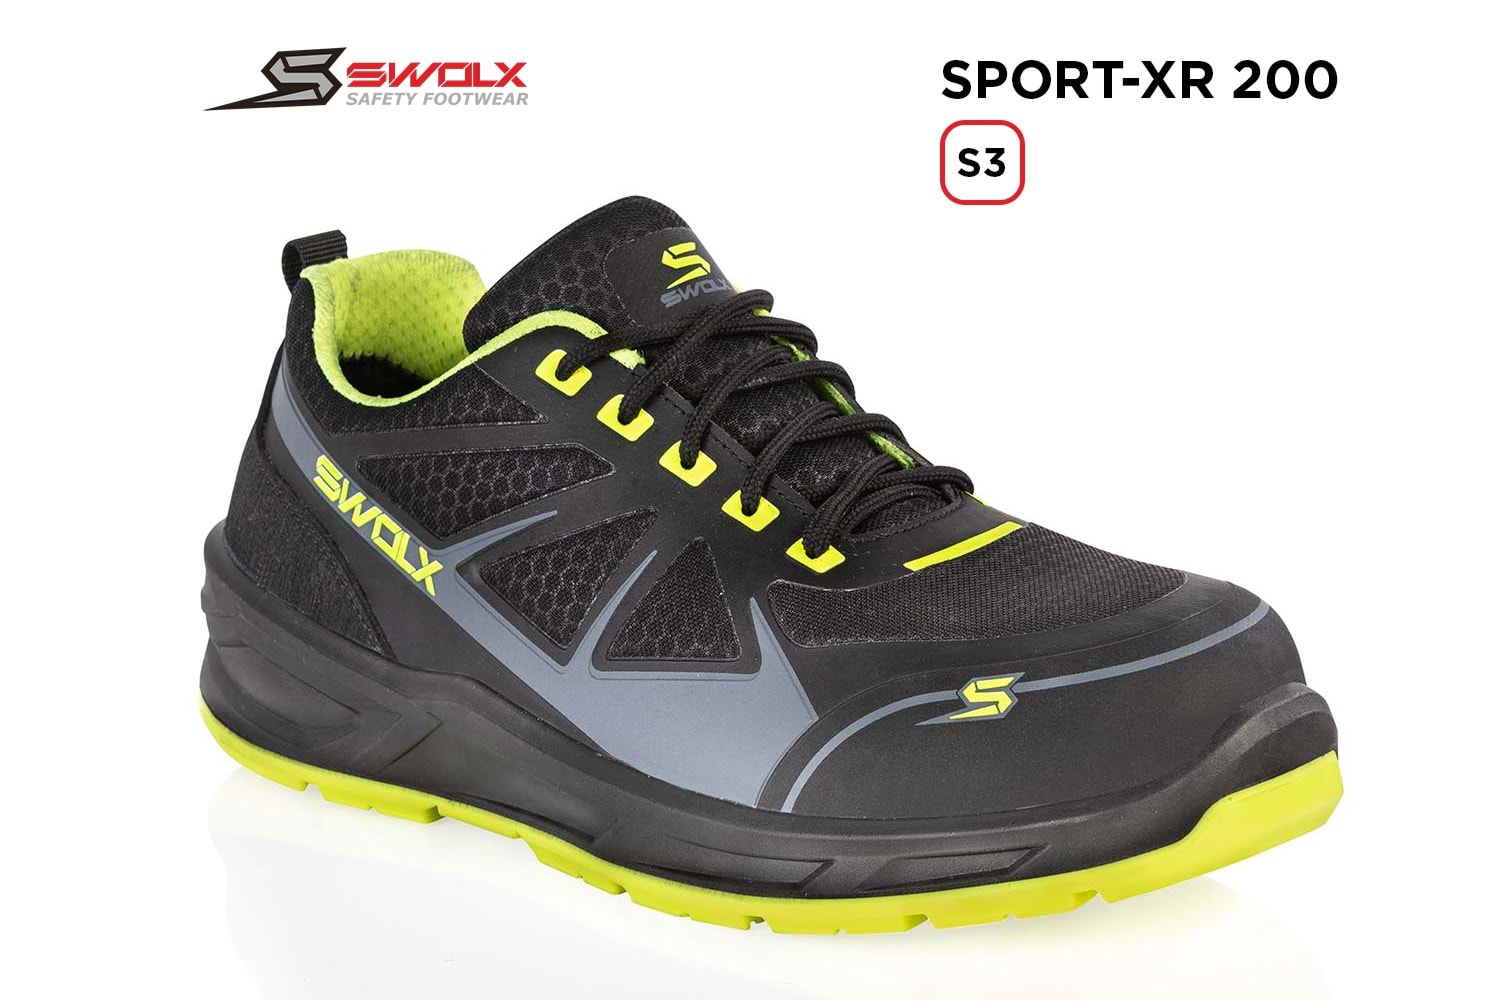 Swolx İş Ayakkabısı - Sport-Xr 200 S3 - 41